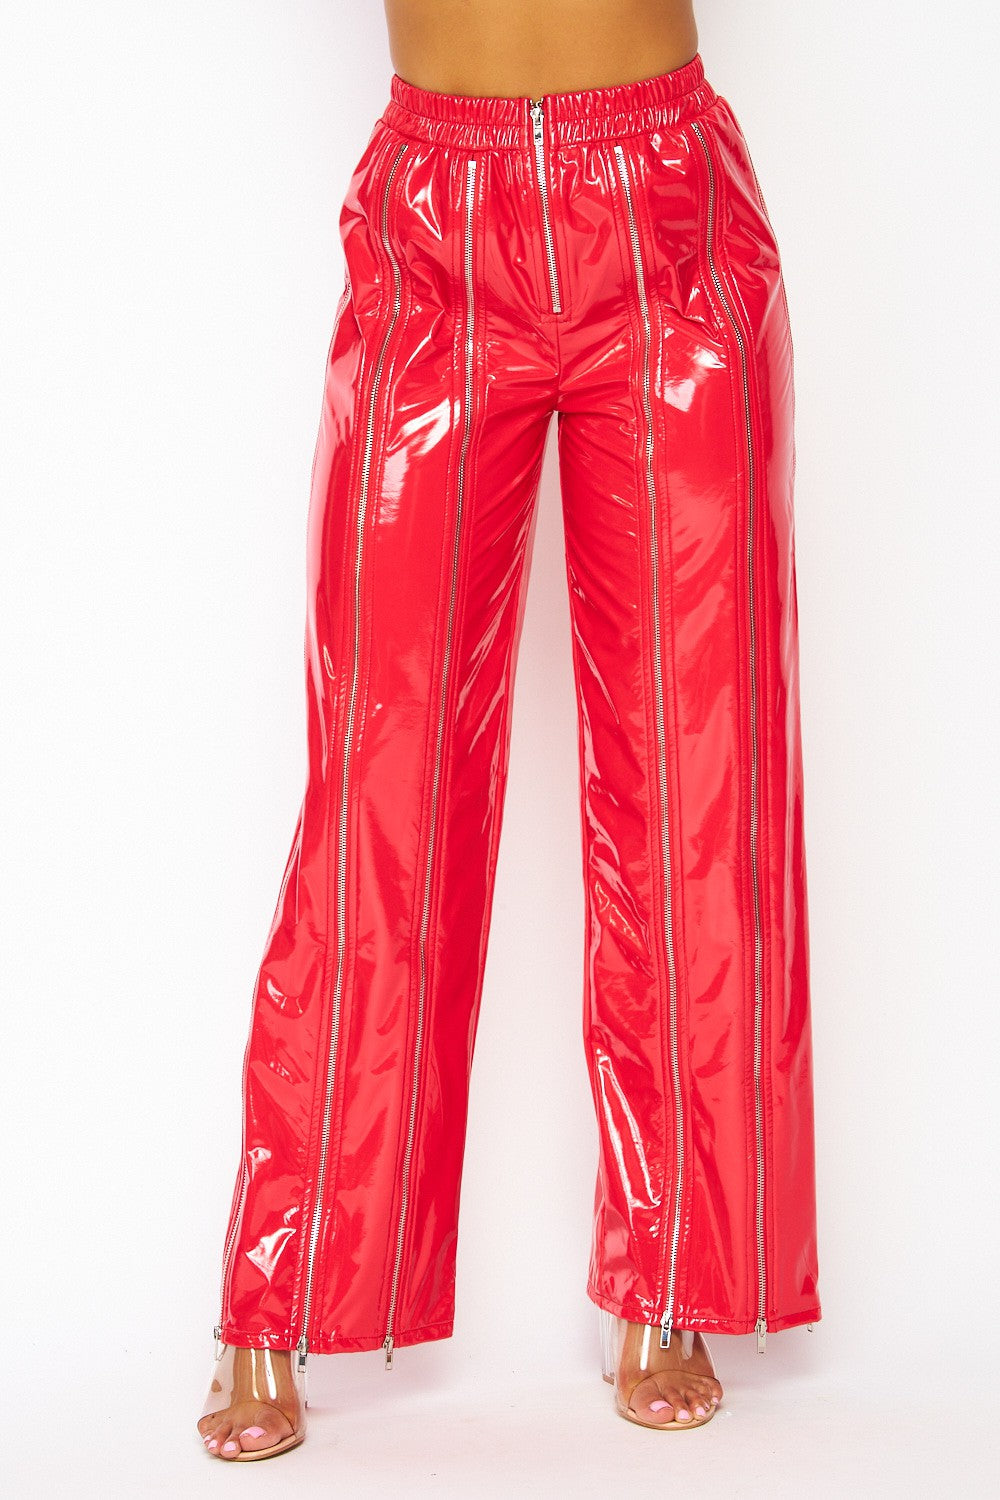 Lottie Multi Zipper Shiny Faux Leather Pants